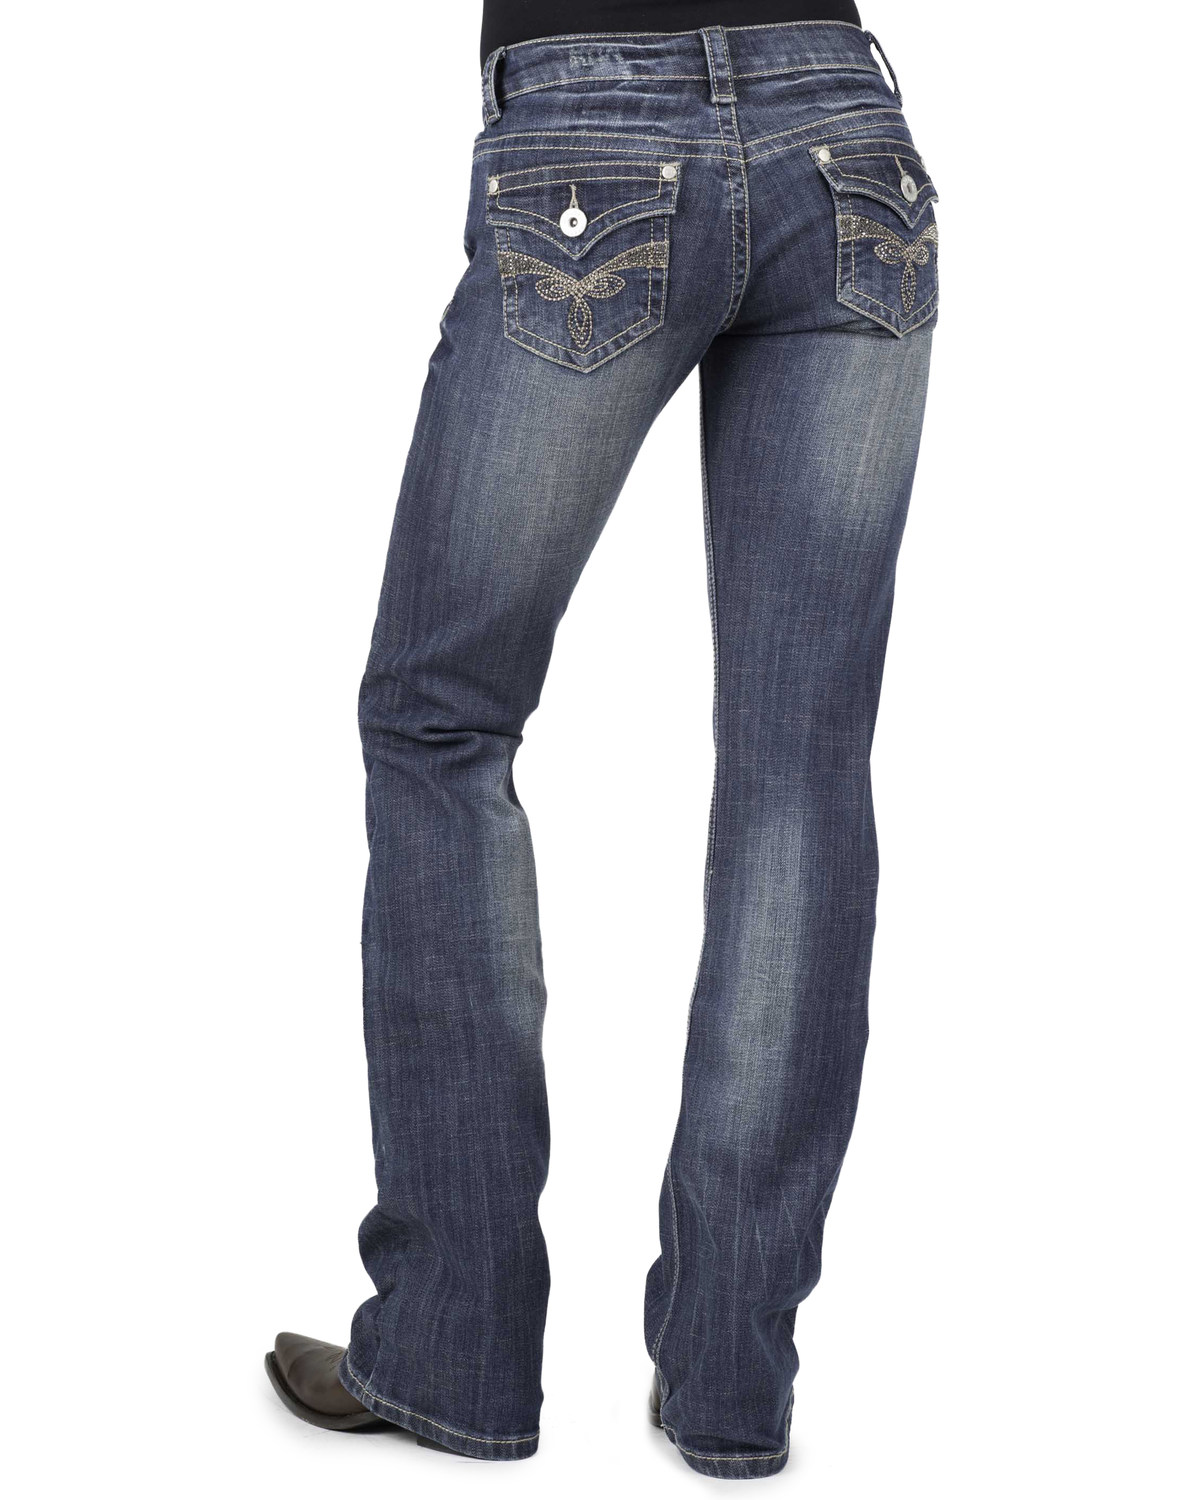 womens bling pocket jeans